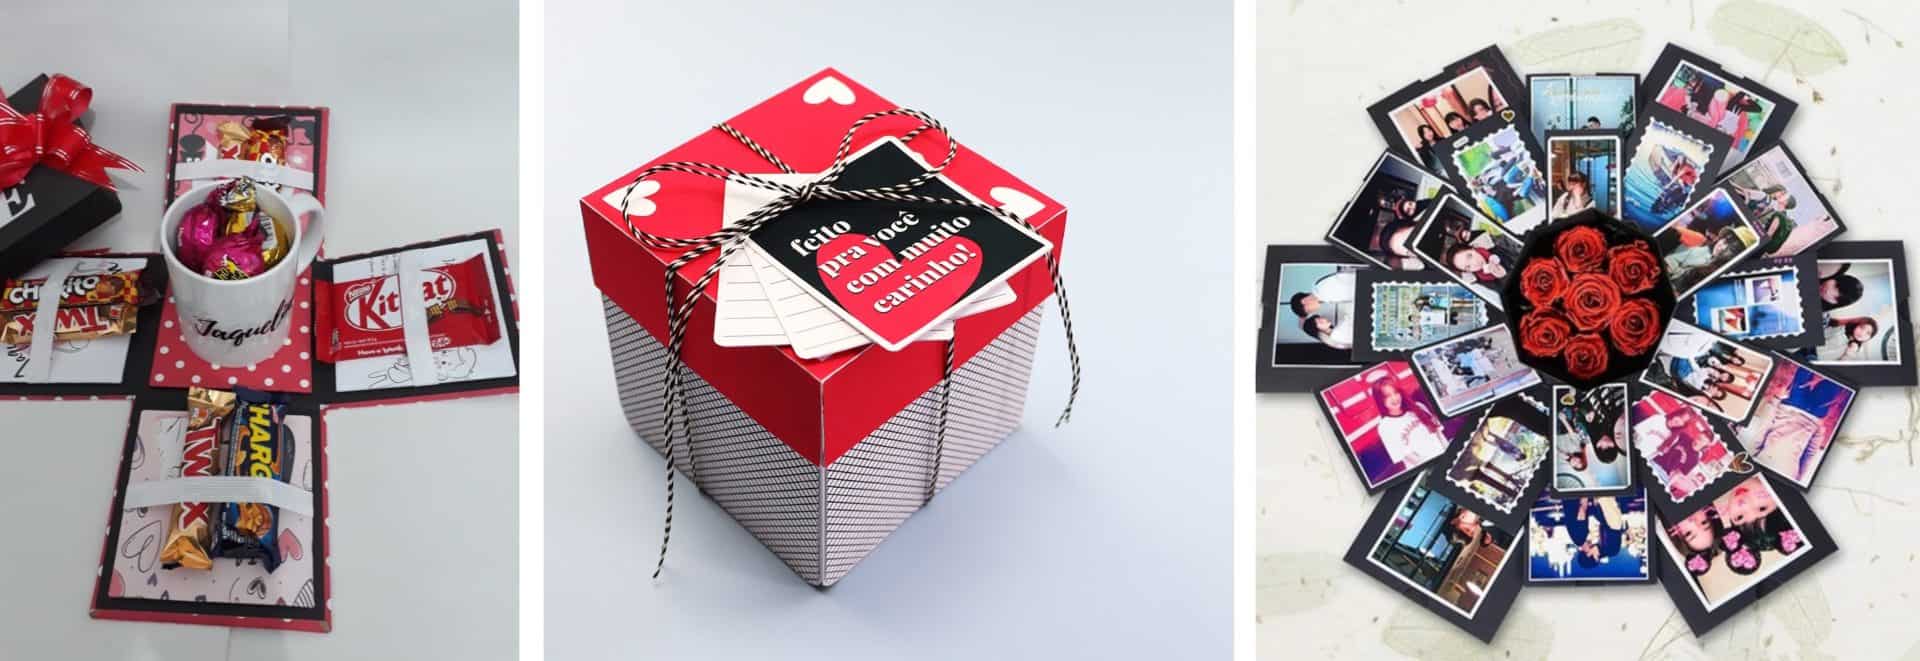 caixas que abrem com presentes dentro como ideia de presente de natal de última hora